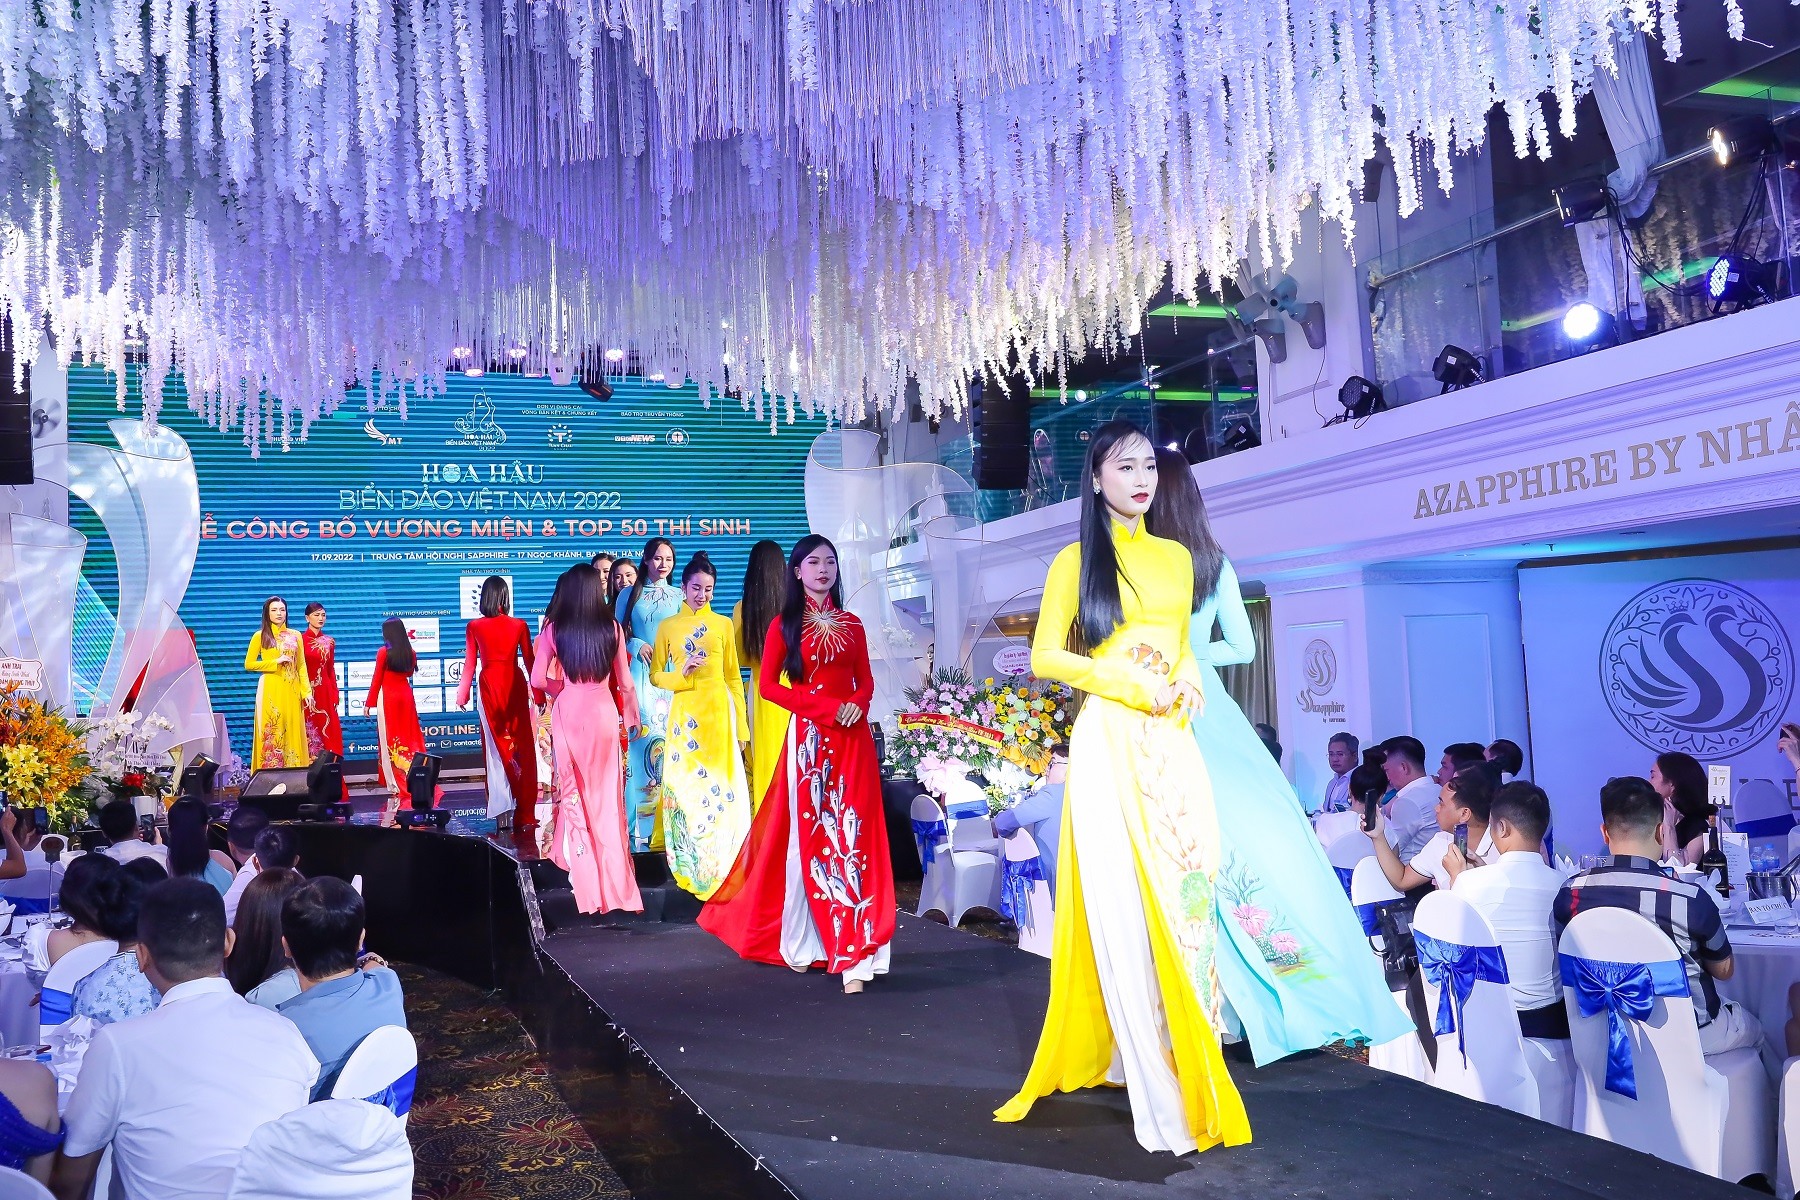 Dàn thí sinh Hoa hậu Biển Đảo Việt Nam 2022 được đánh giá là đồng đều. Ảnh: BTC.